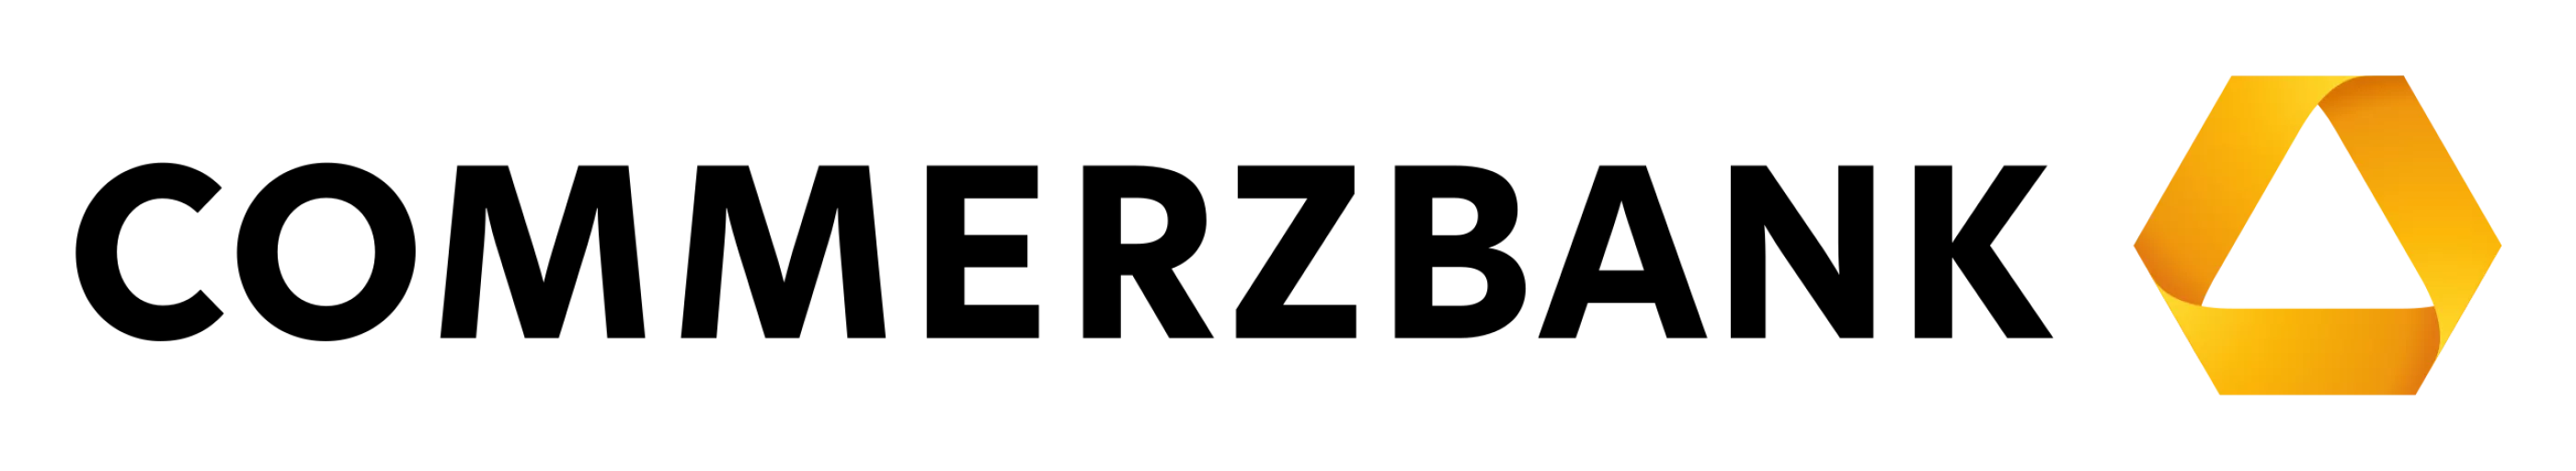 Logo firmy Commerzbank.